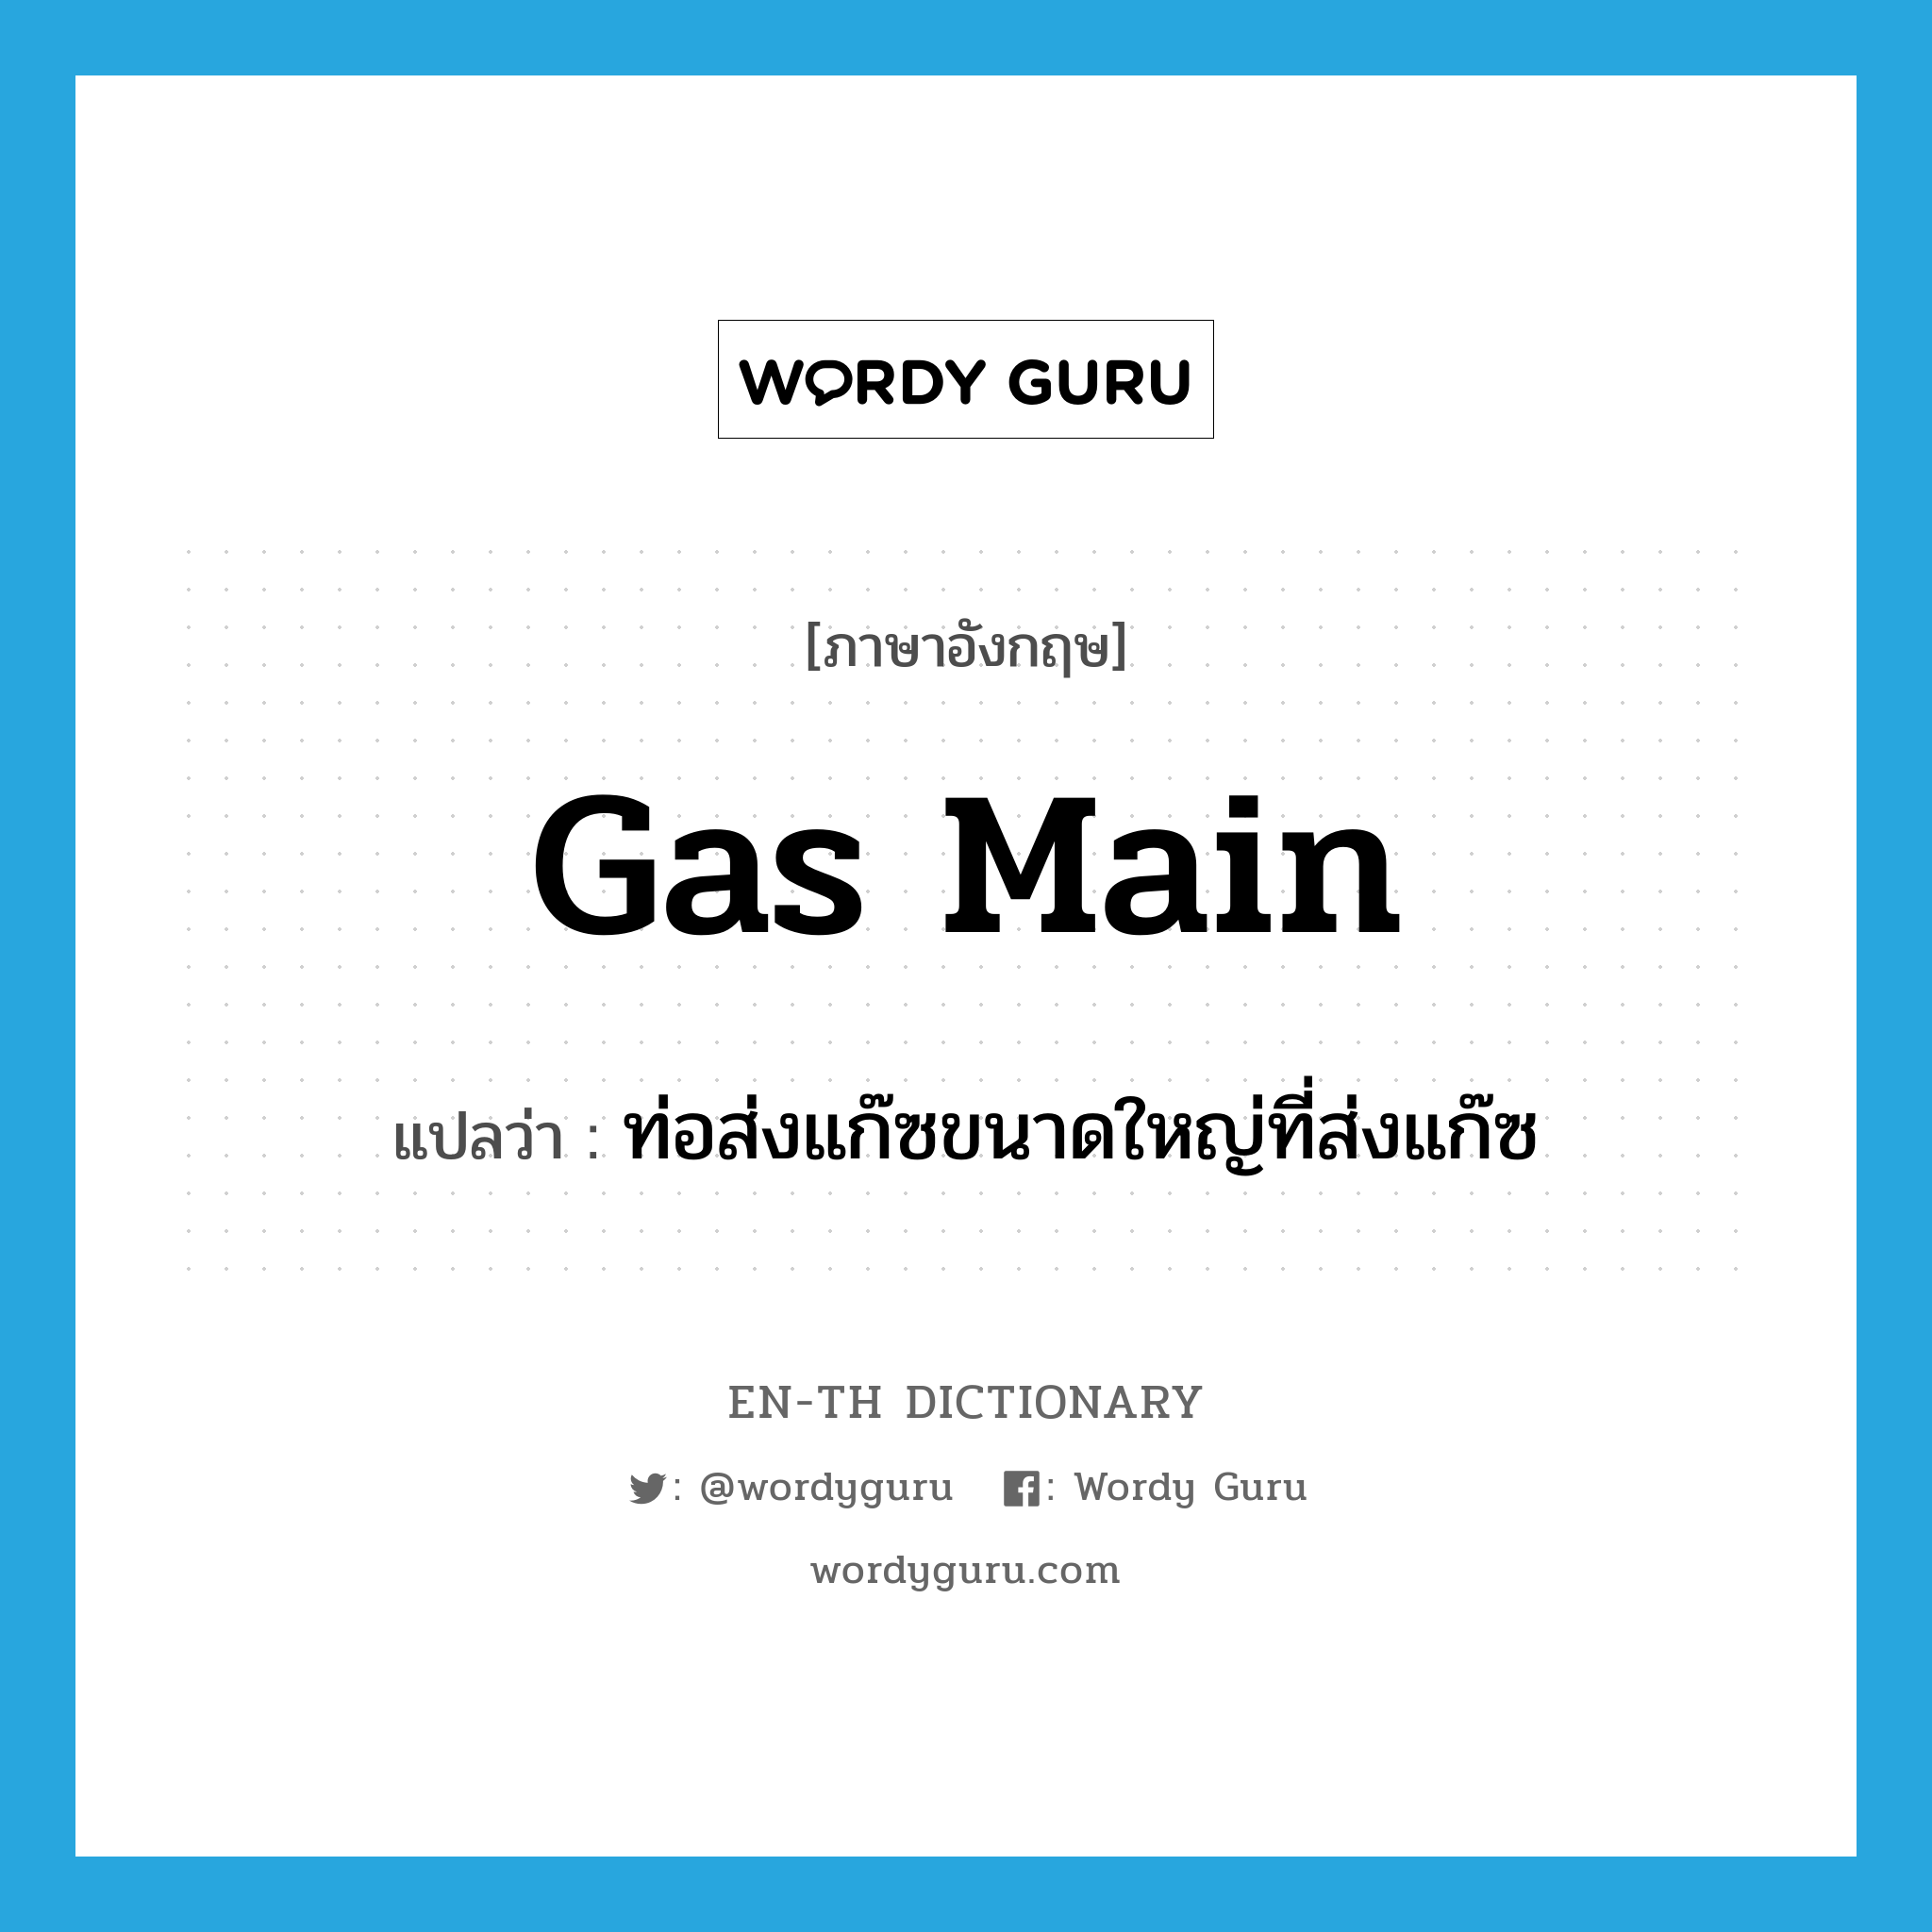 ท่อส่งแก๊ซขนาดใหญ่ที่ส่งแก๊ซ ภาษาอังกฤษ?, คำศัพท์ภาษาอังกฤษ ท่อส่งแก๊ซขนาดใหญ่ที่ส่งแก๊ซ แปลว่า gas main ประเภท N หมวด N